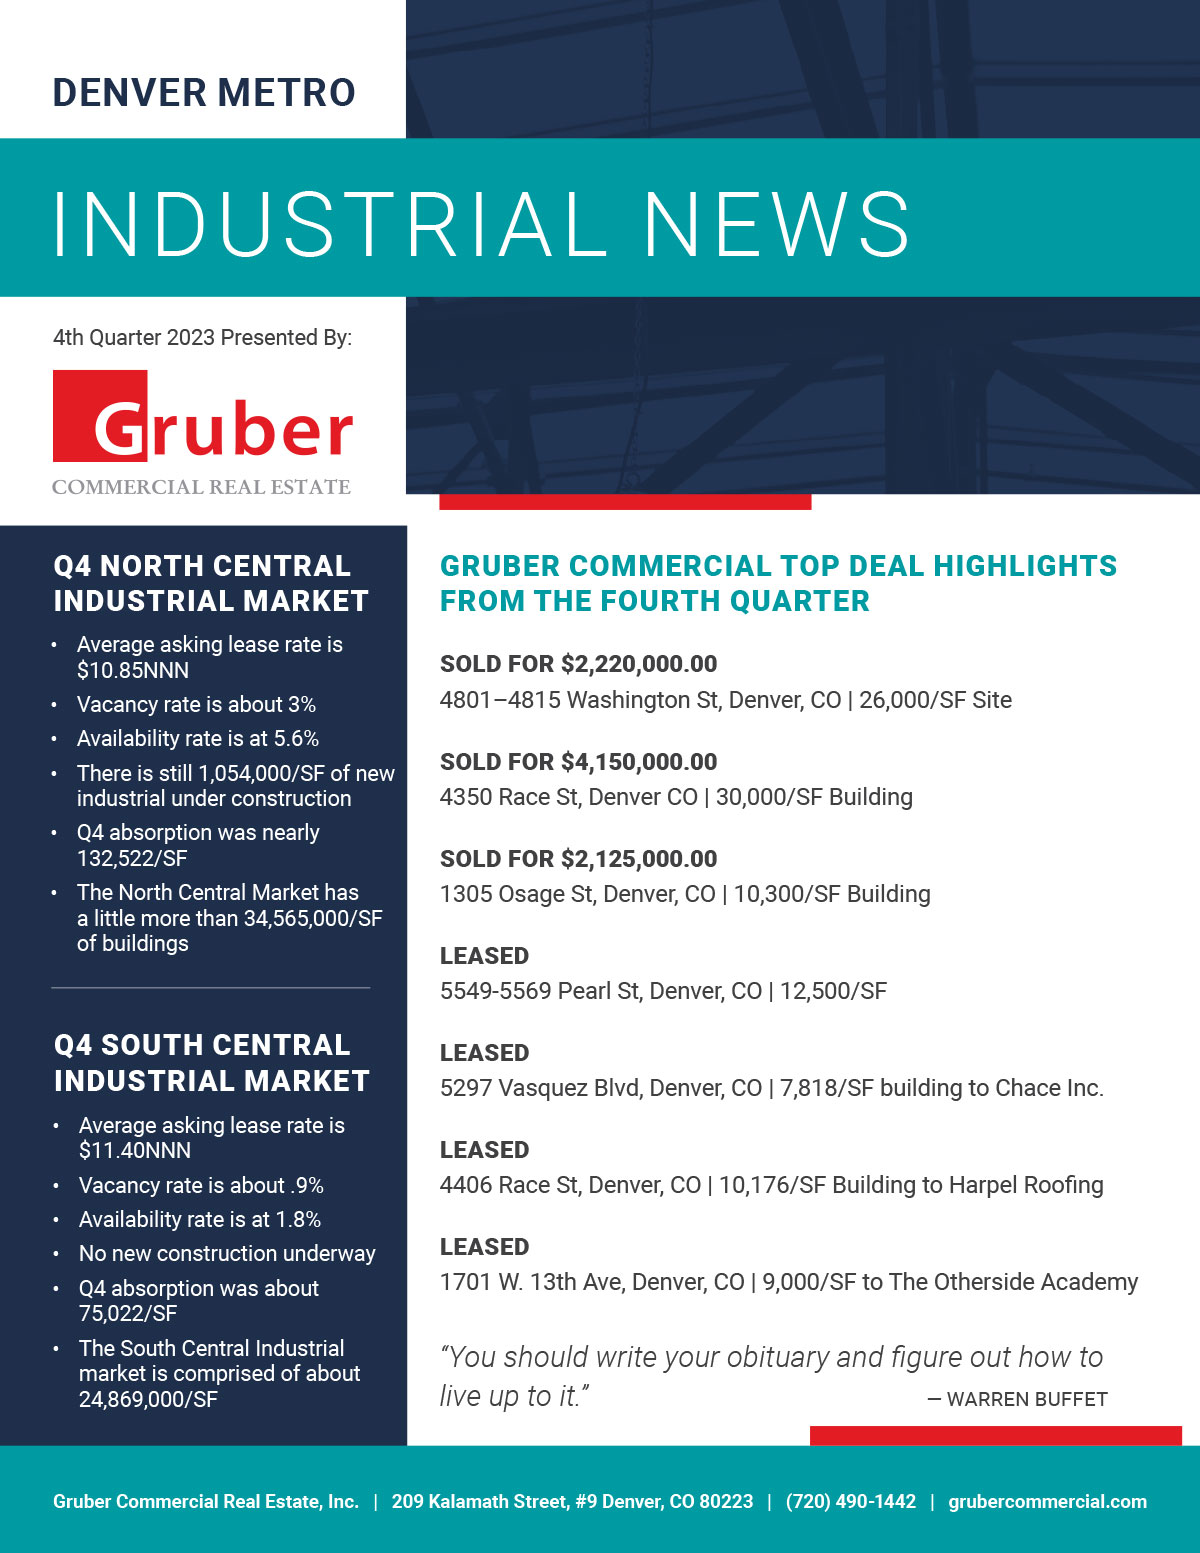 Gruber Newsletter: 4th Quarter 2023